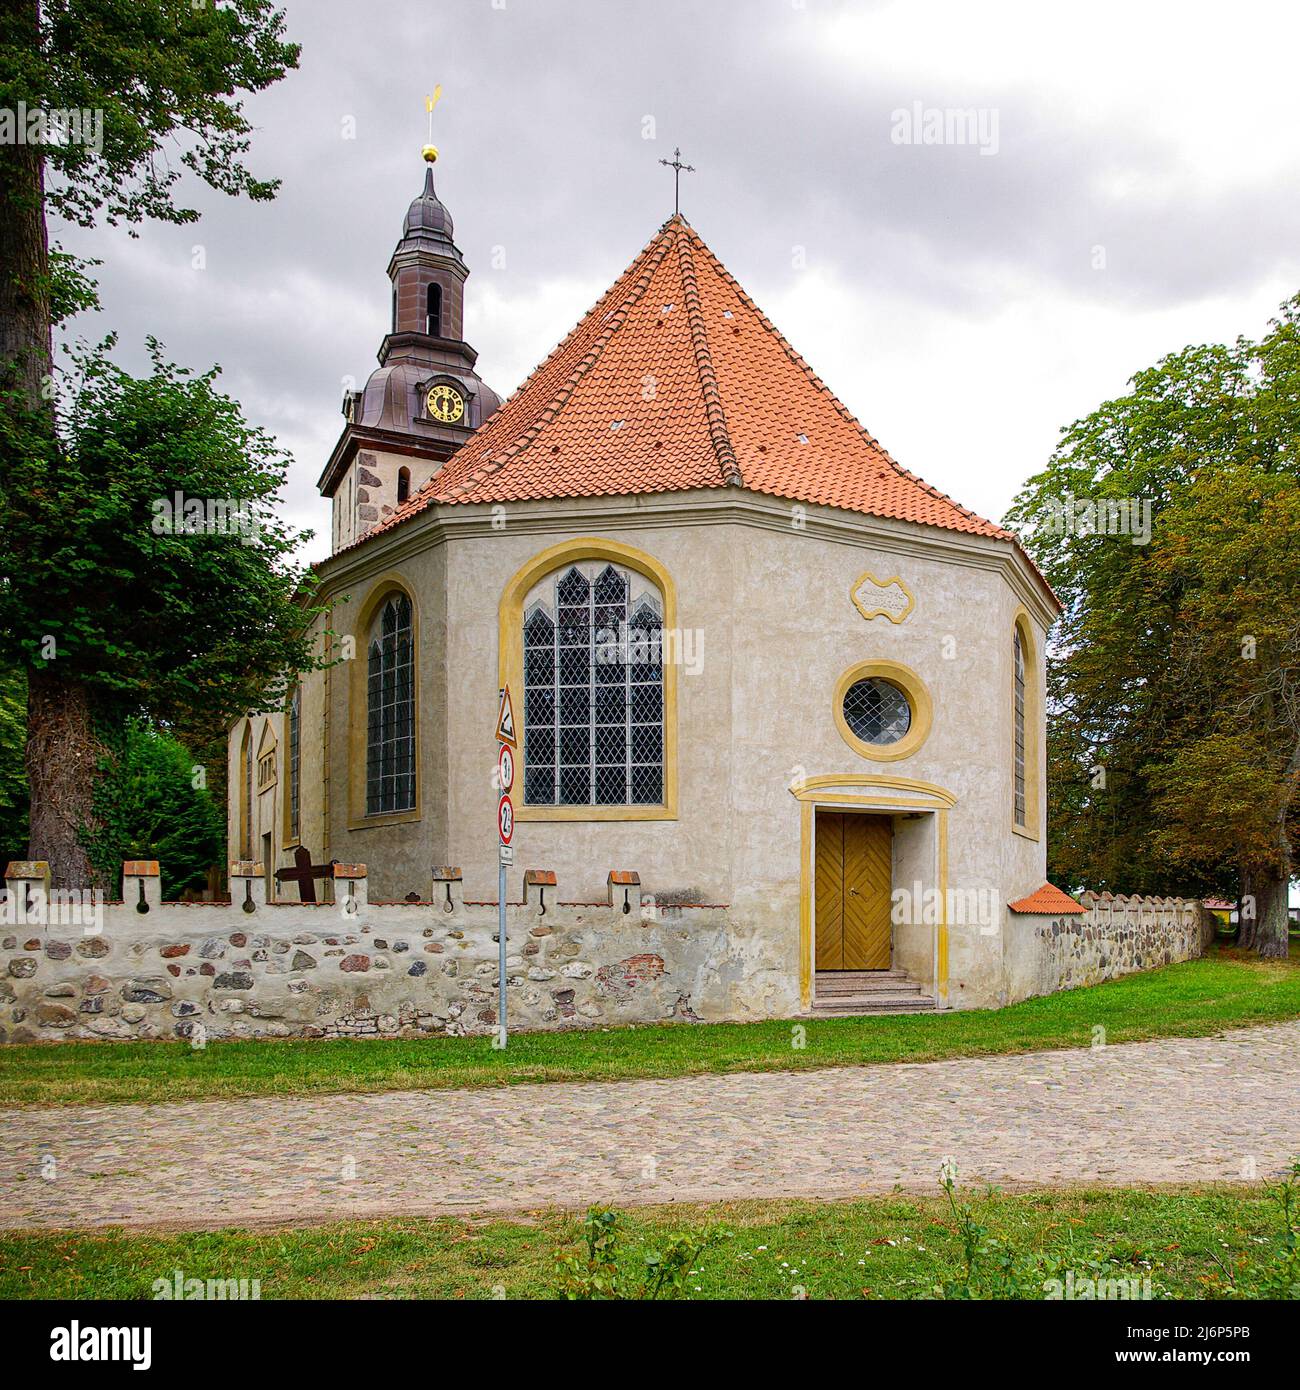 Die barocke Dorfkirche St. Andreas in Nehringen, Gemeinde Grammendorf, Mecklenburg-Vorpommern, Deutschland. Stockfoto